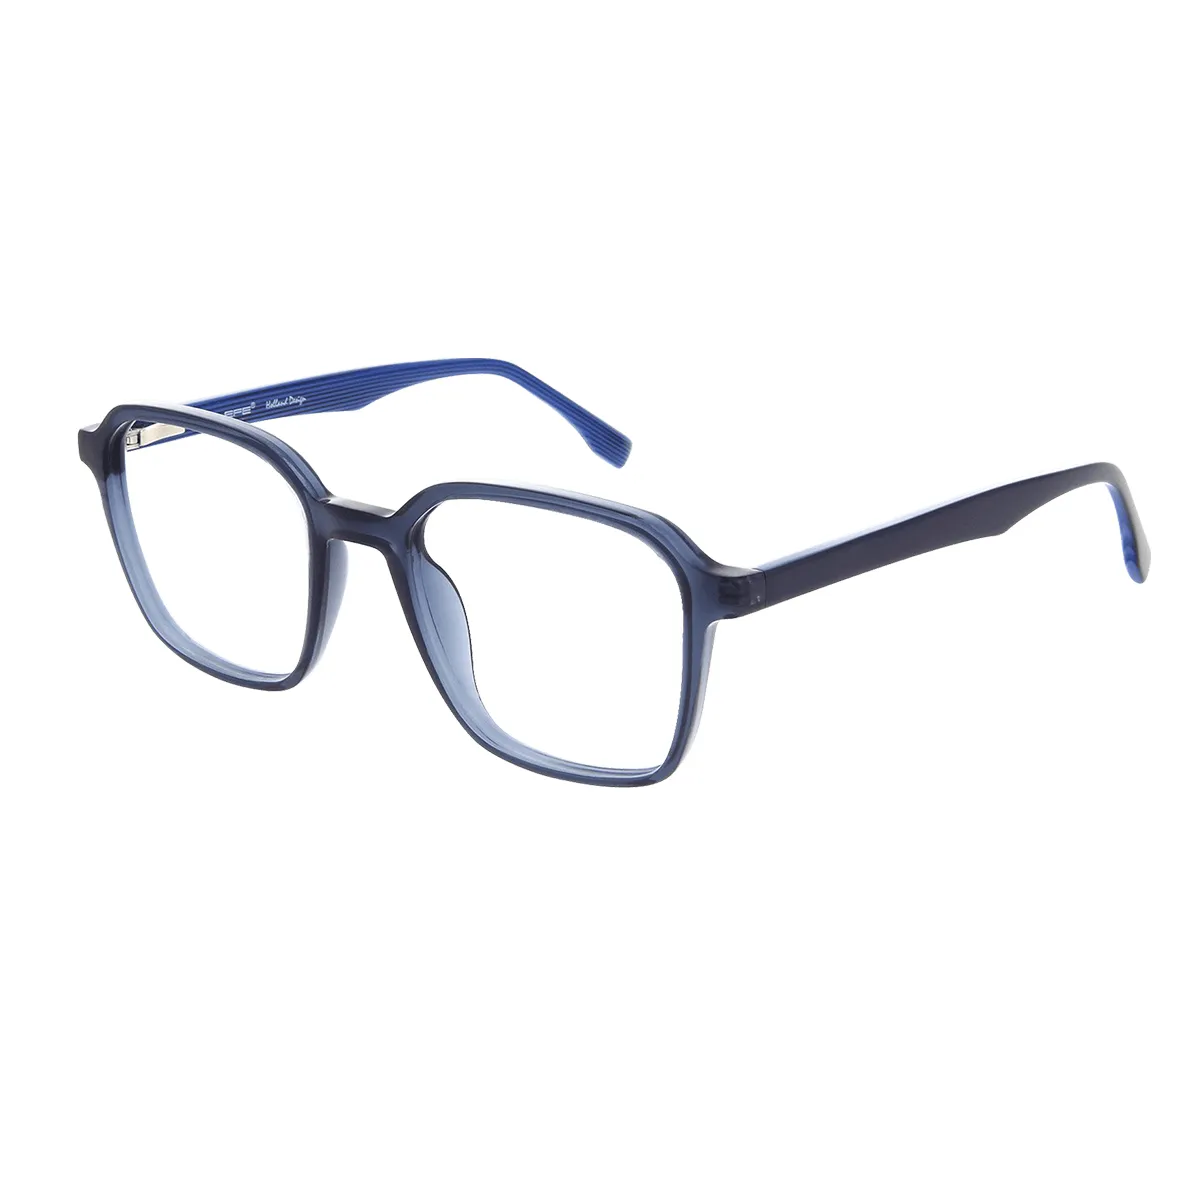 Guthrie - Square Blue Glasses for Men & Women